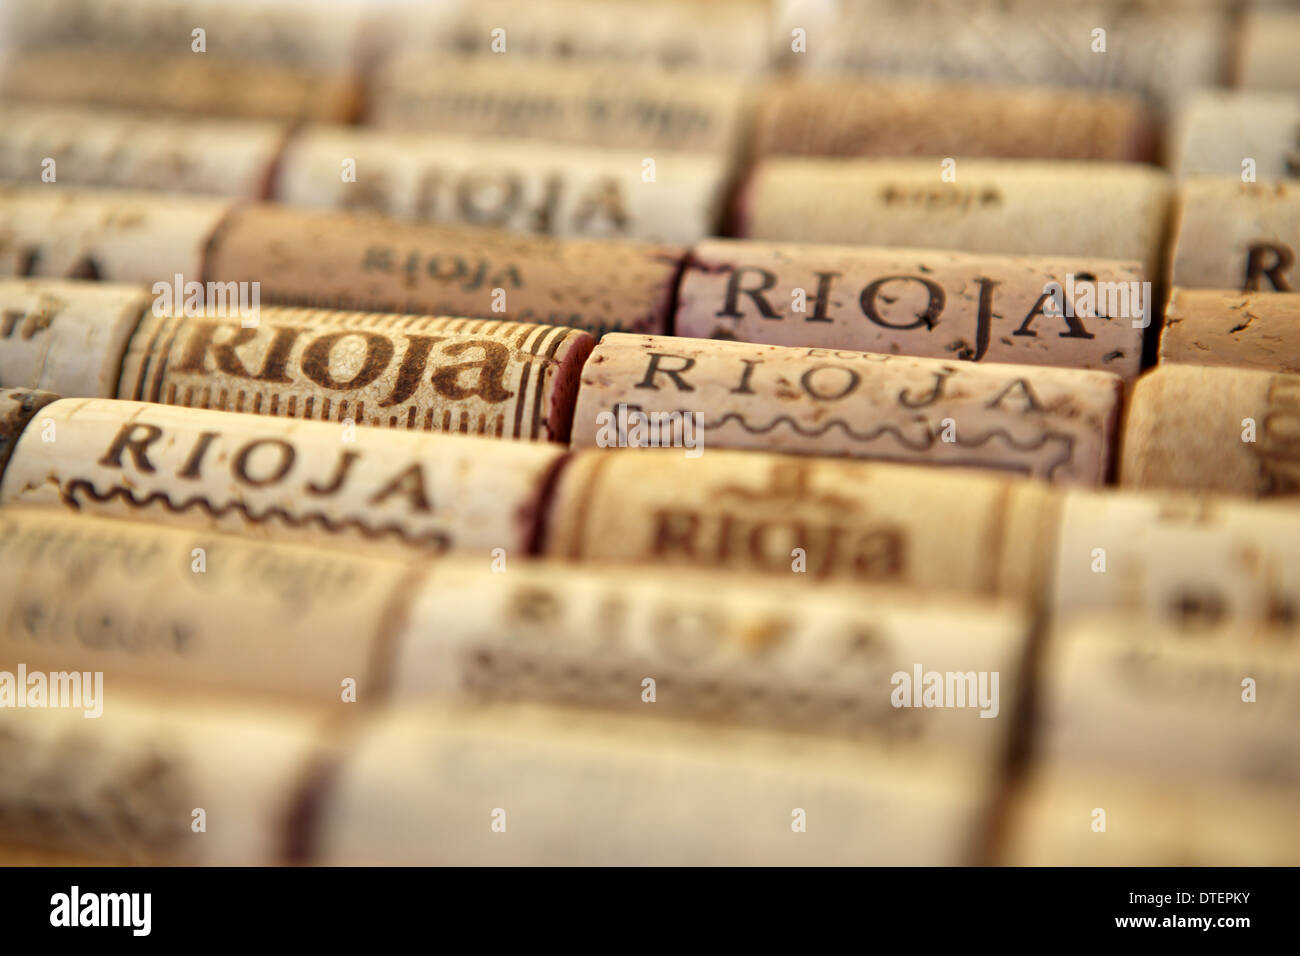 Tappi di Rioja Foto Stock